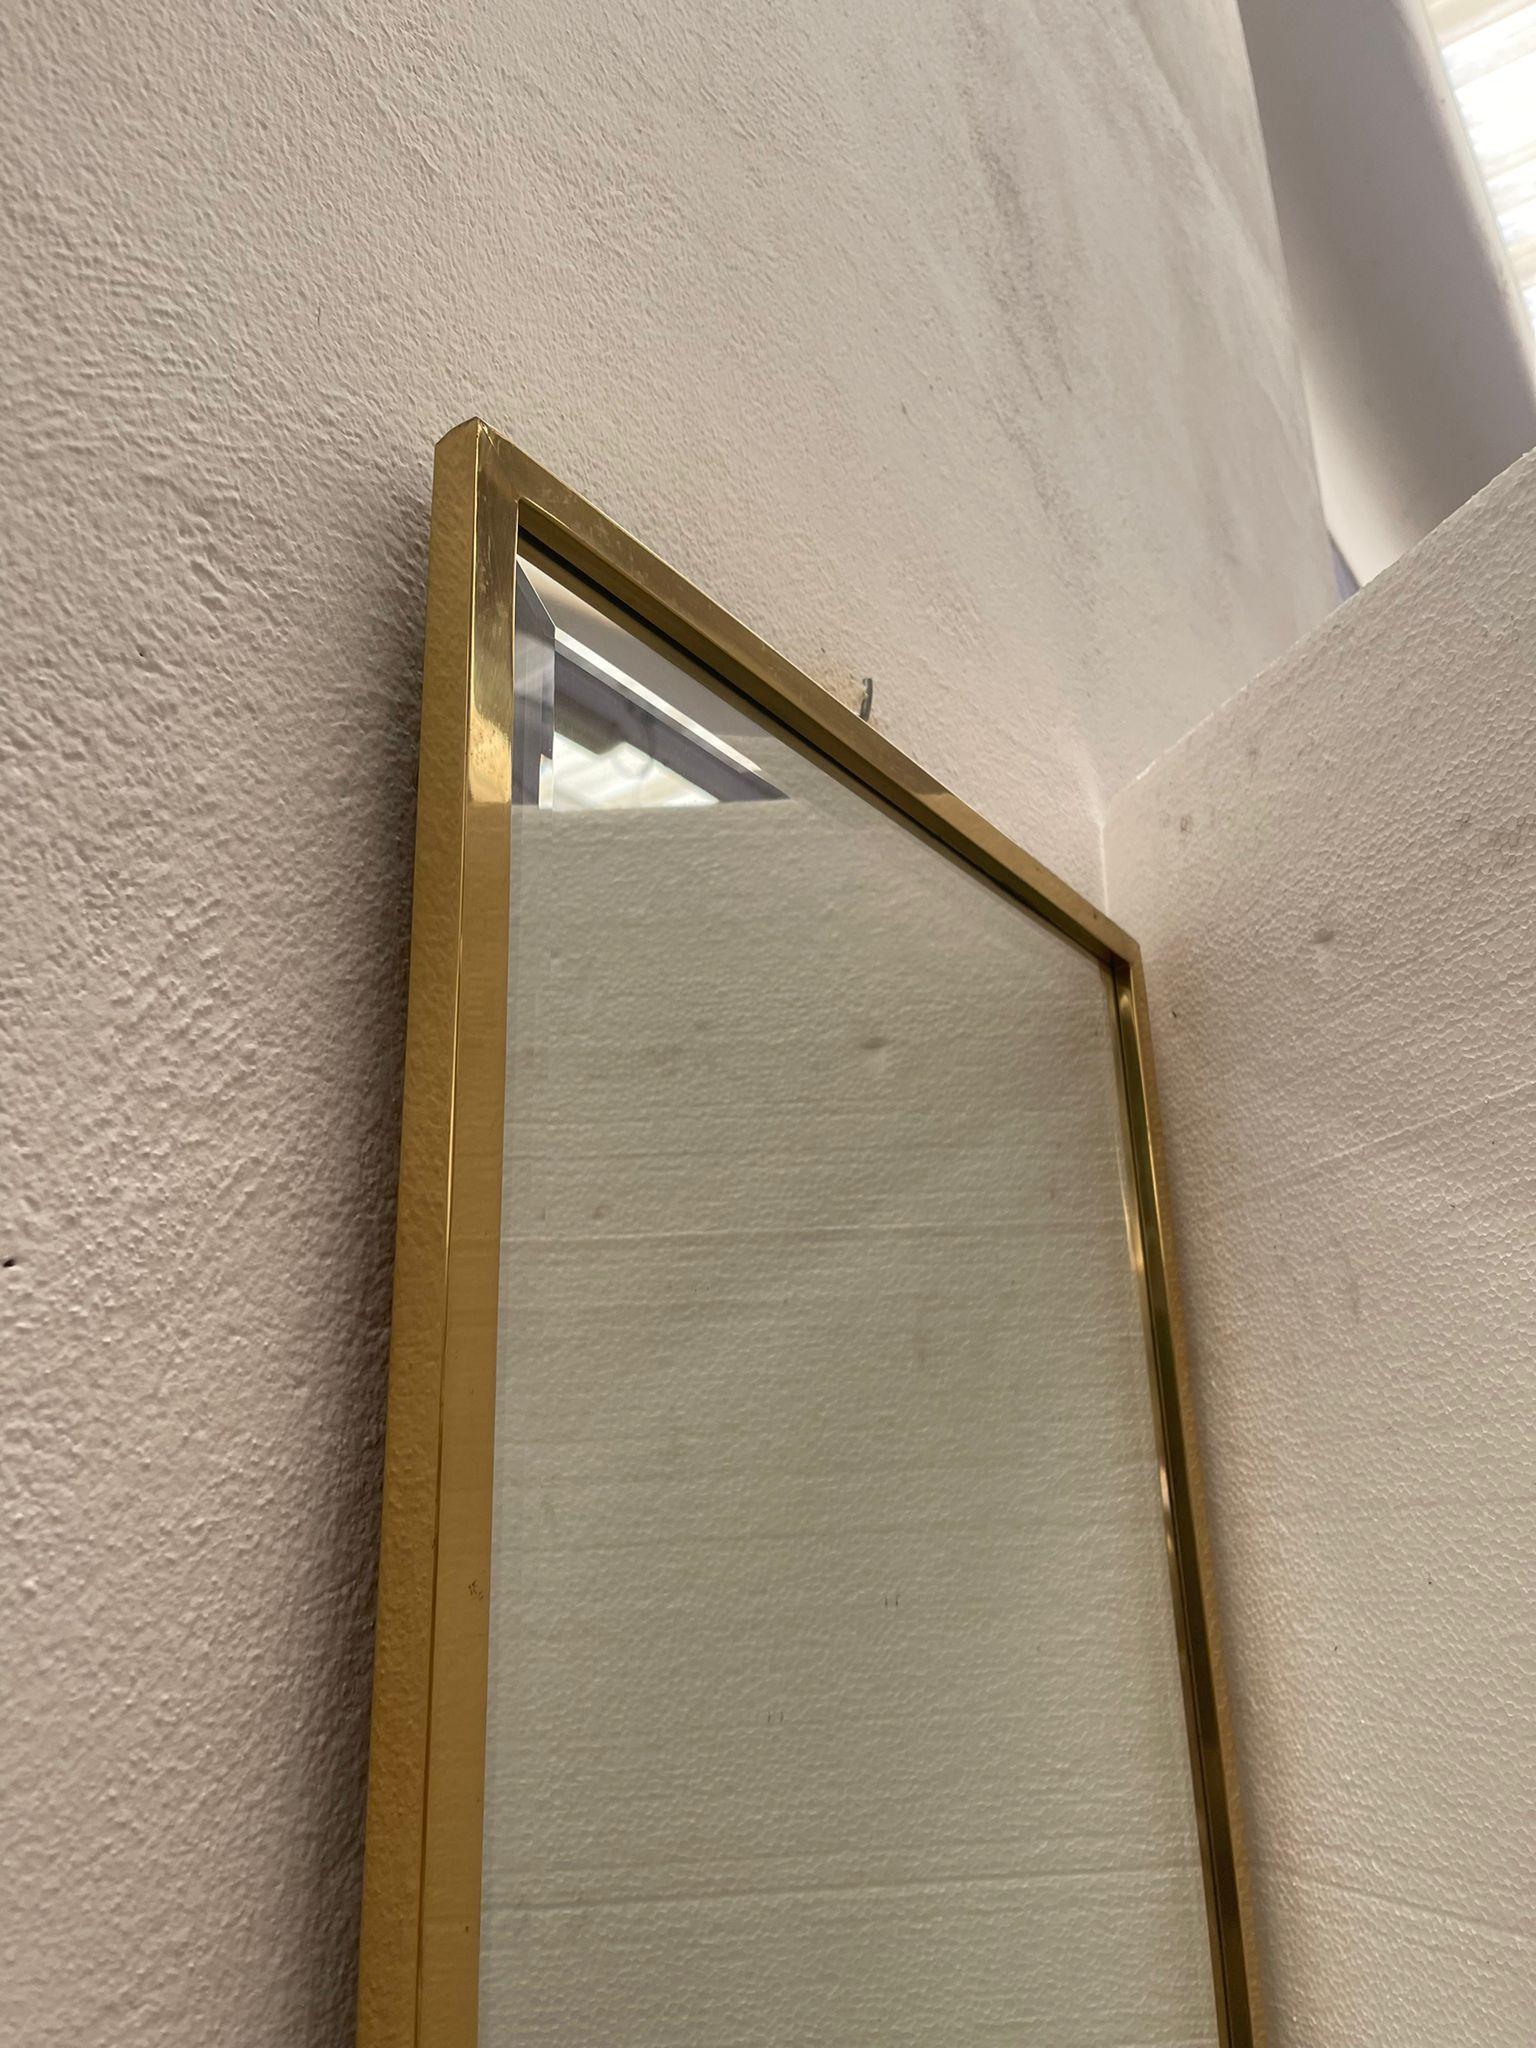 In Italien von Fachleuten hergestellter Spiegel. Der goldene Rahmen verleiht dem reflektierten Bild einen Hauch von Klarheit.

Entworfen von Mice Versailles.